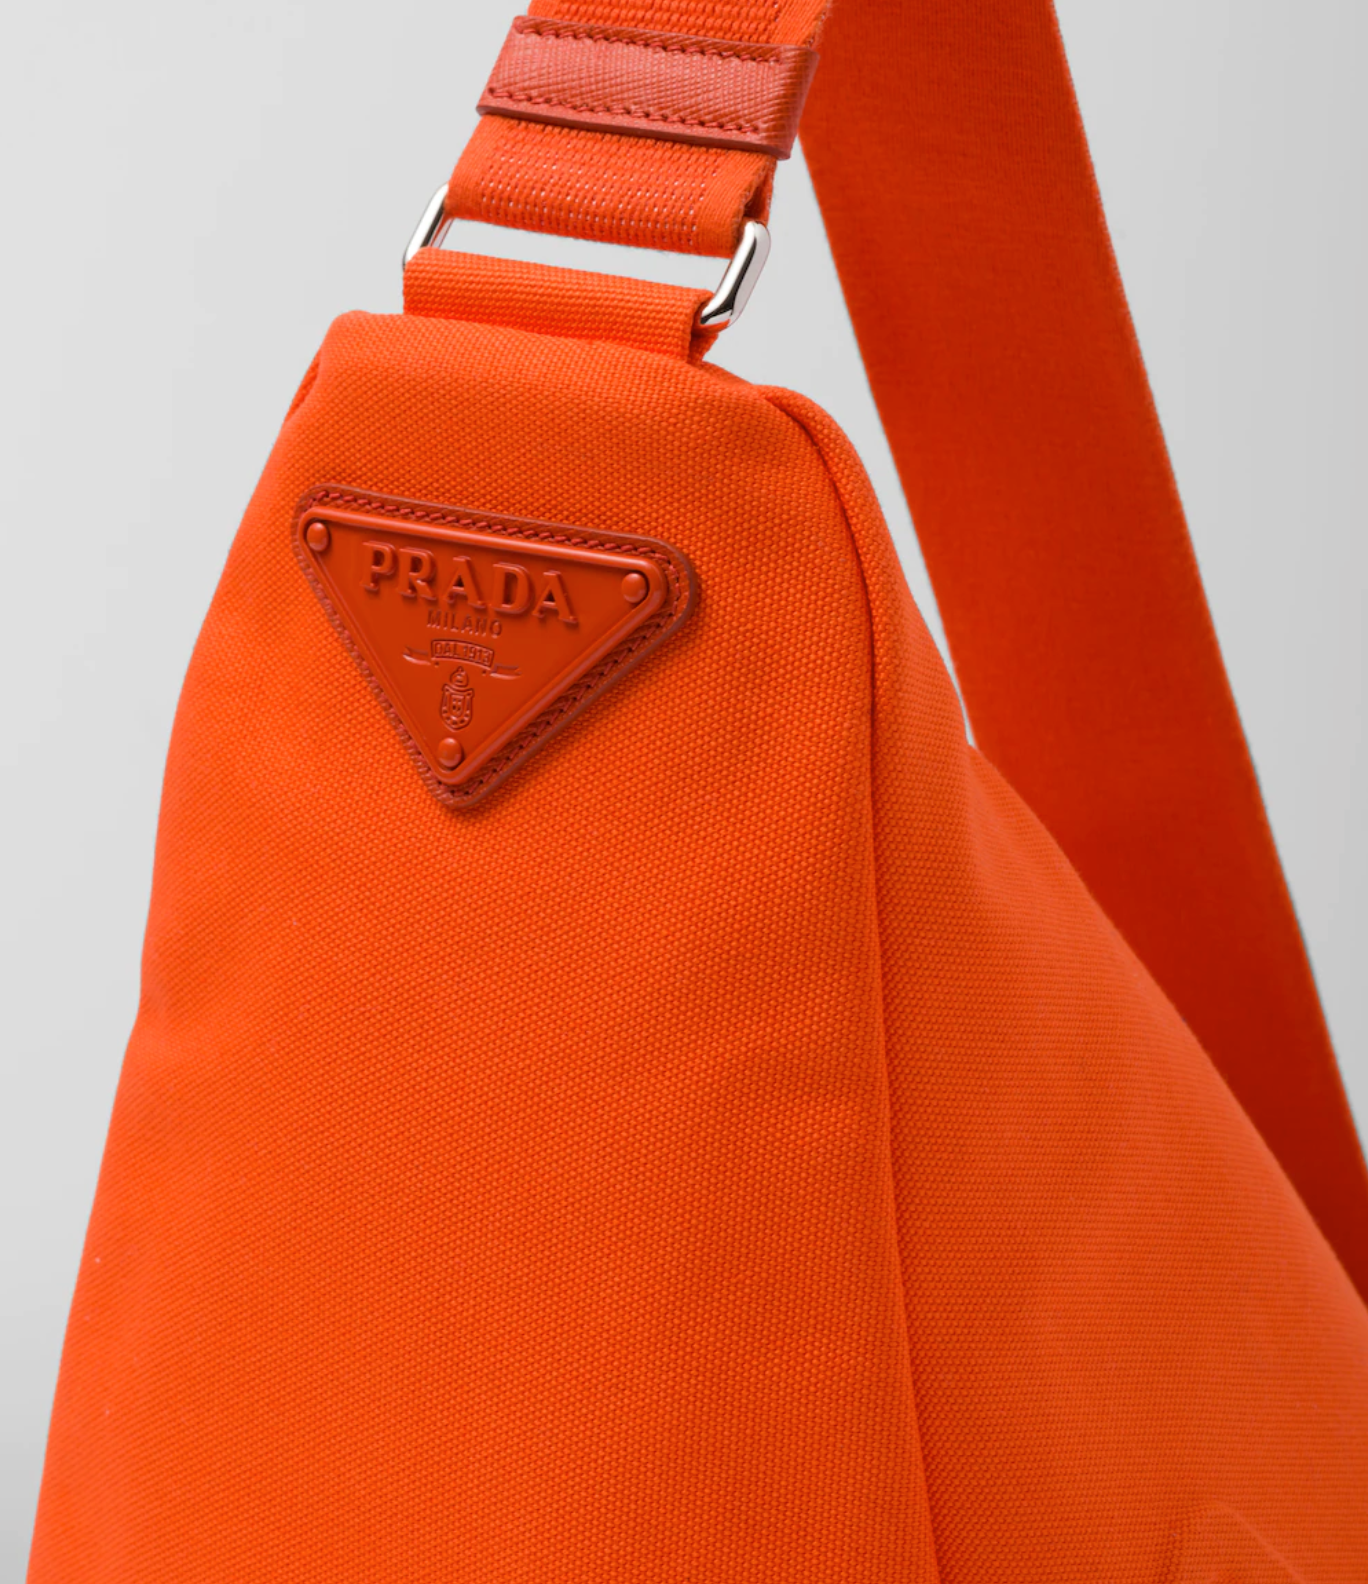 Orange Color Triangle Nylon Shoulder Bag for Women Adjustable